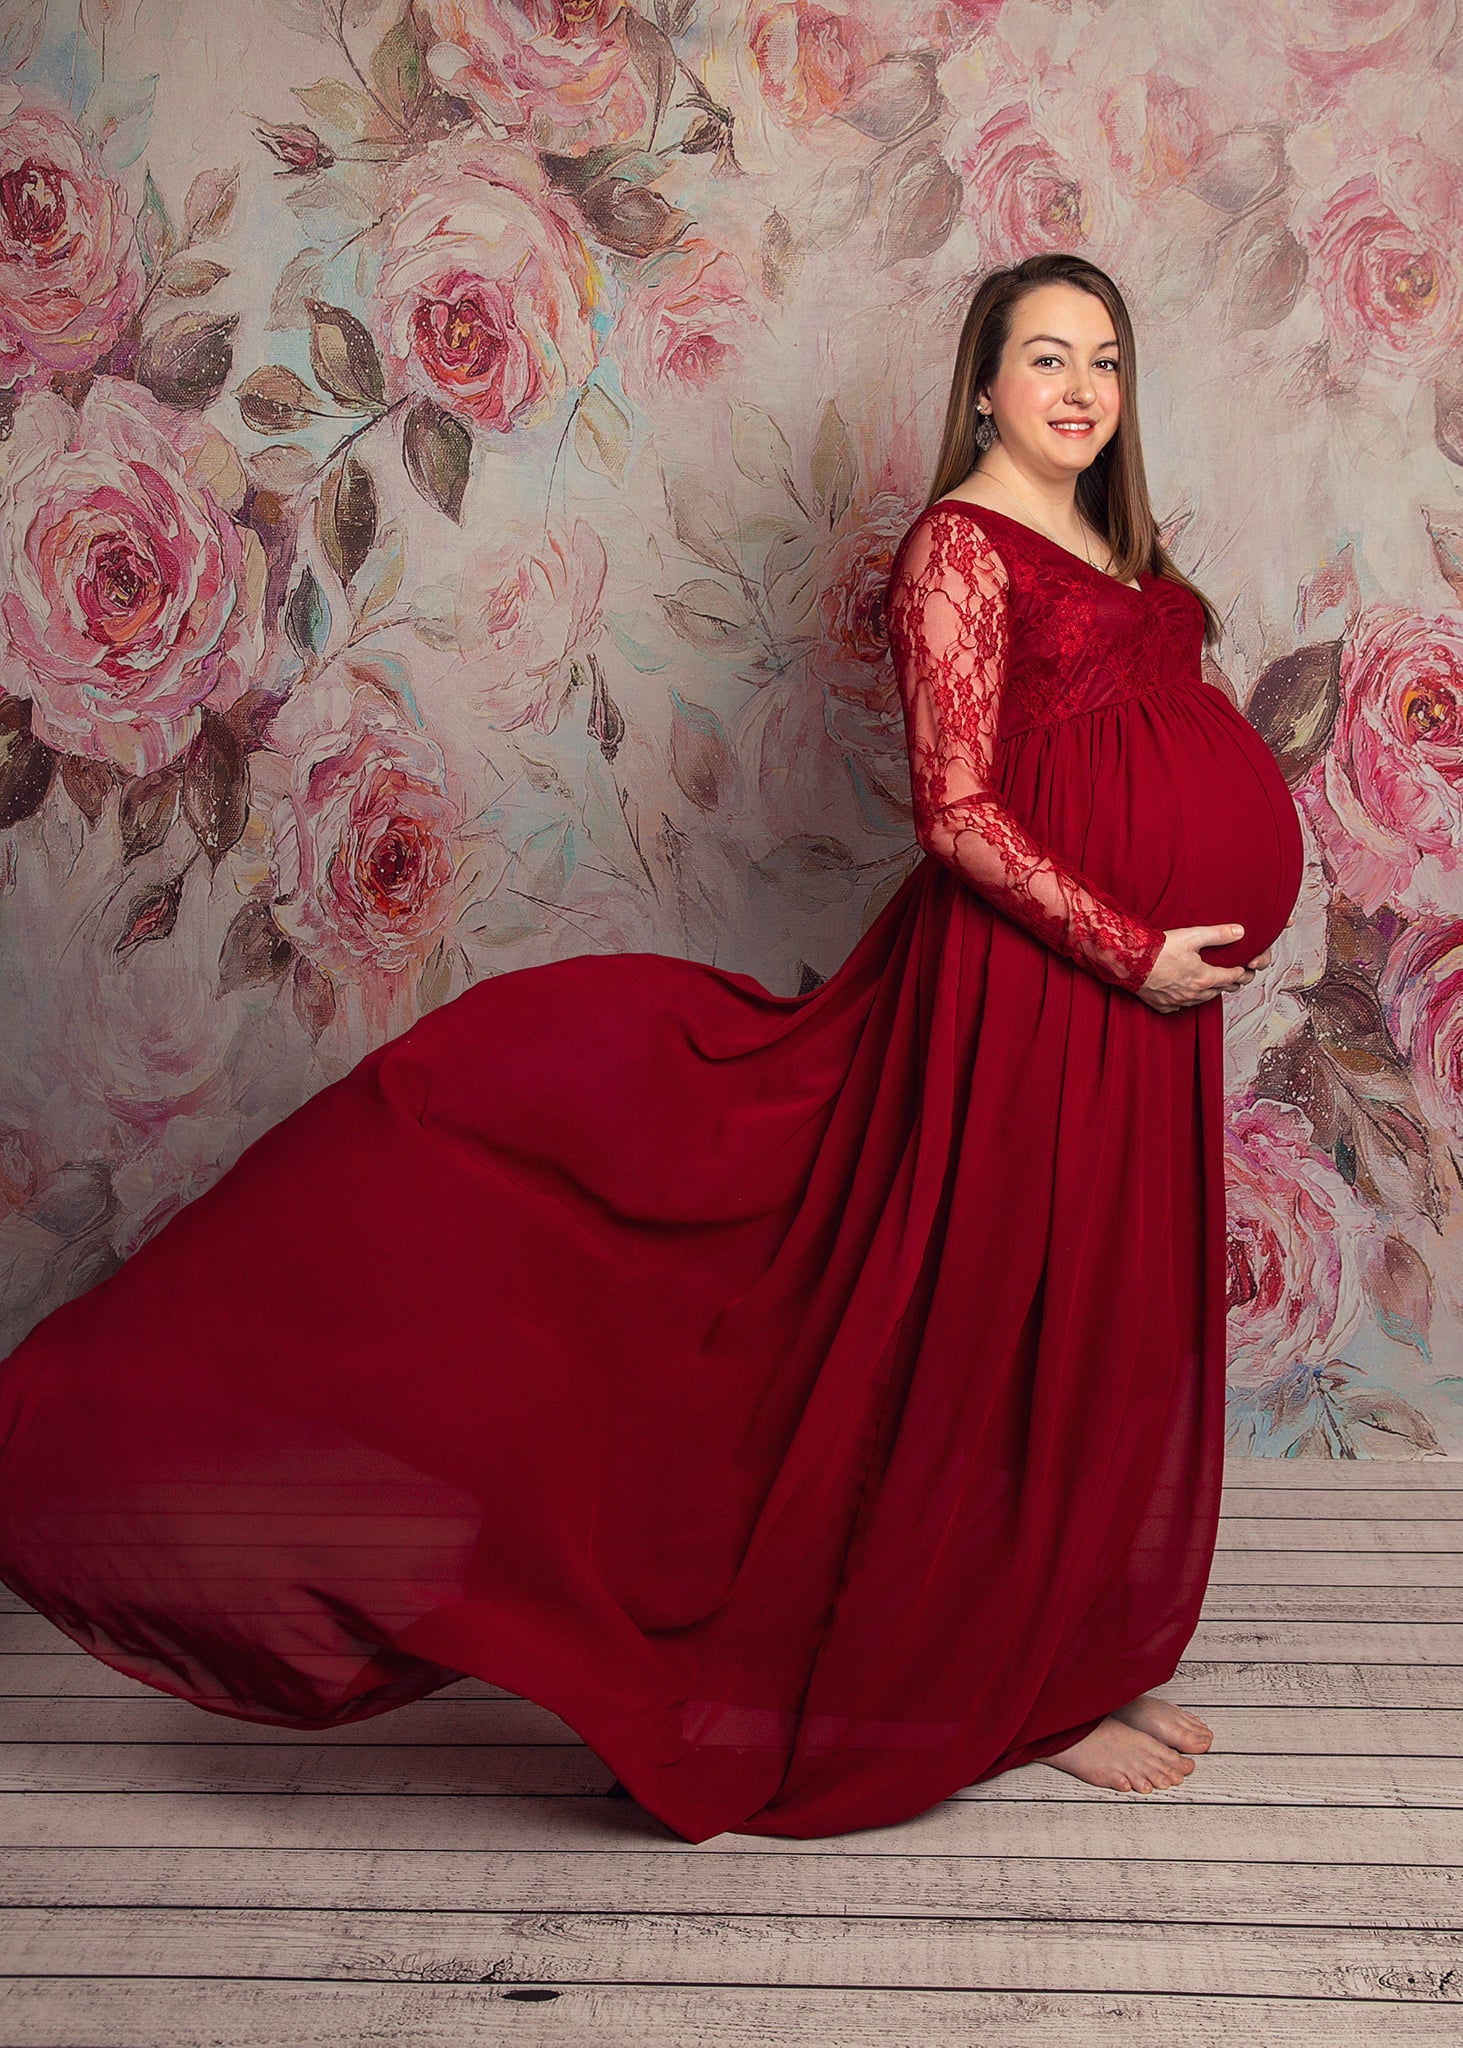 Kate Florals Fine Art Blumen Hintergrund für Mutterschaft Fotografie